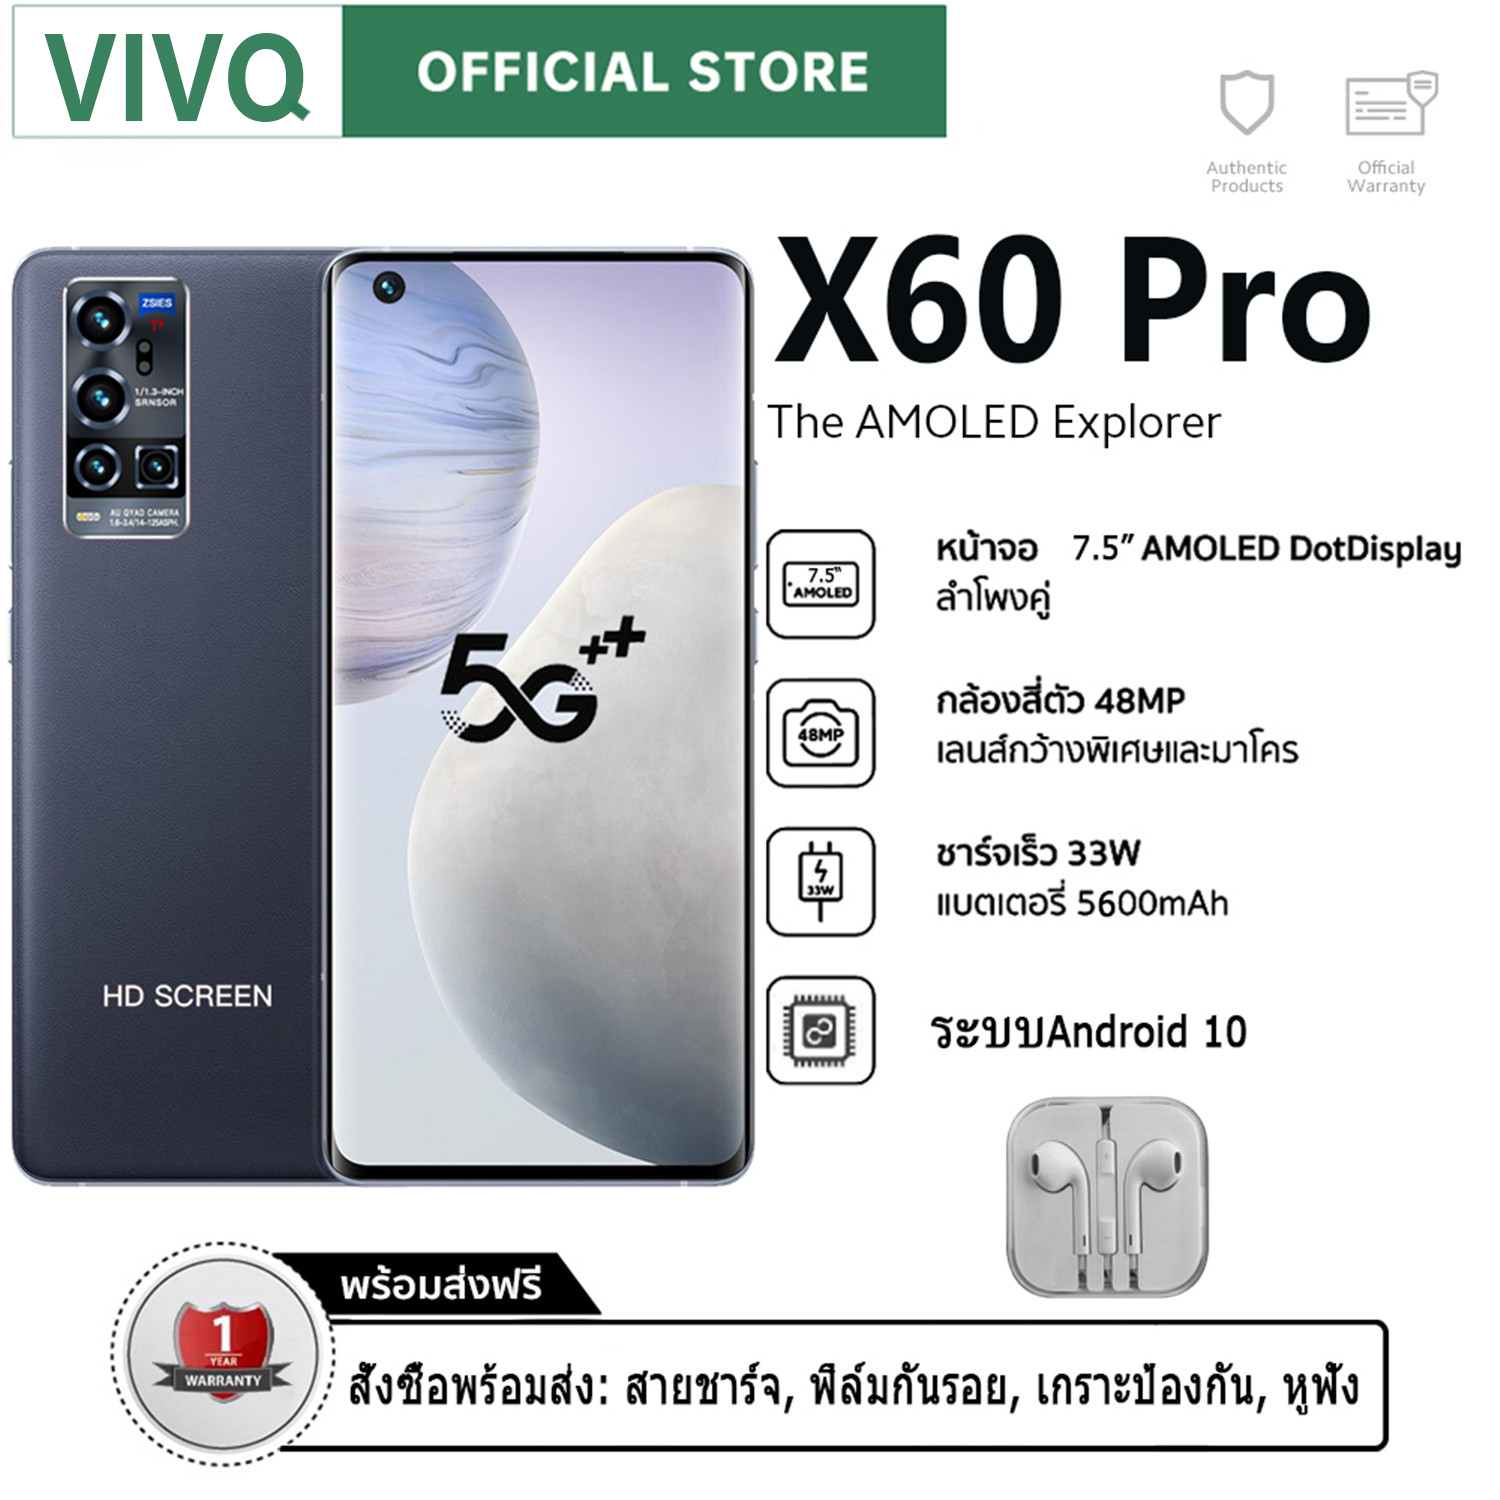 โทรศัพท์สมาร์ท VlVQ X60 Pro มือถือราคาถูก หน้าจอใหญ่ สามารสแกนนิ้วมือได้ 7.7/6.5 นิ้ว 12GB+512GB Full HD กล้องหน้า 21MPกล้องหลัง 48MP แบต 5600 mAh รองรับทุกซิม เมณูภาษาไทยใบหน้าส่งฟรีทั่วไทย สแตนด์บาย2ซิม ใช้แอพธนาคารได้ รองรับทุกซิม เมณูภาษาไทย กล่องครบ